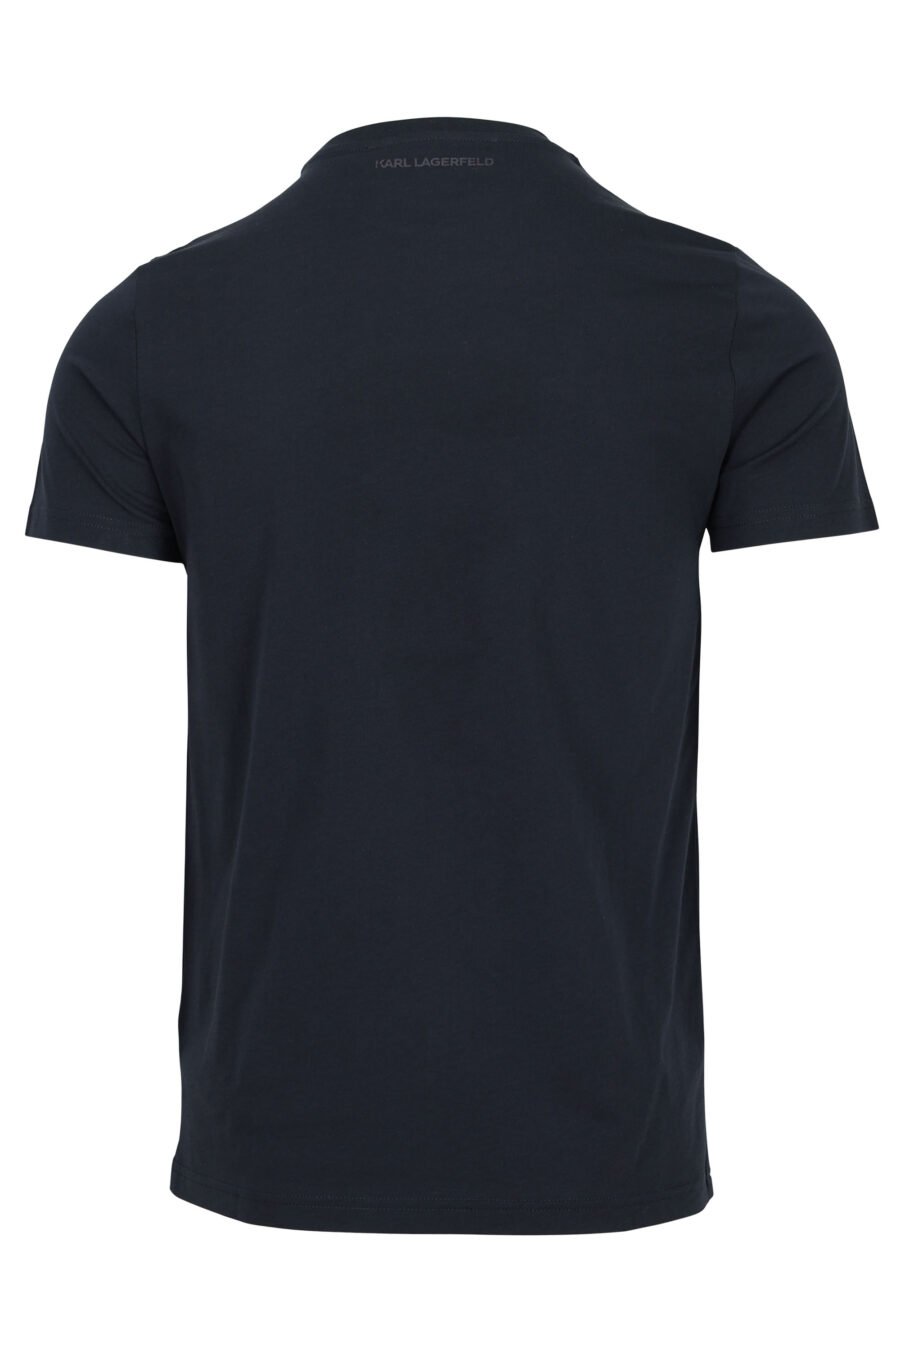 Camiseta azul oscuro de cuello redondo con maxilogo "karl" - 4062225535312 1